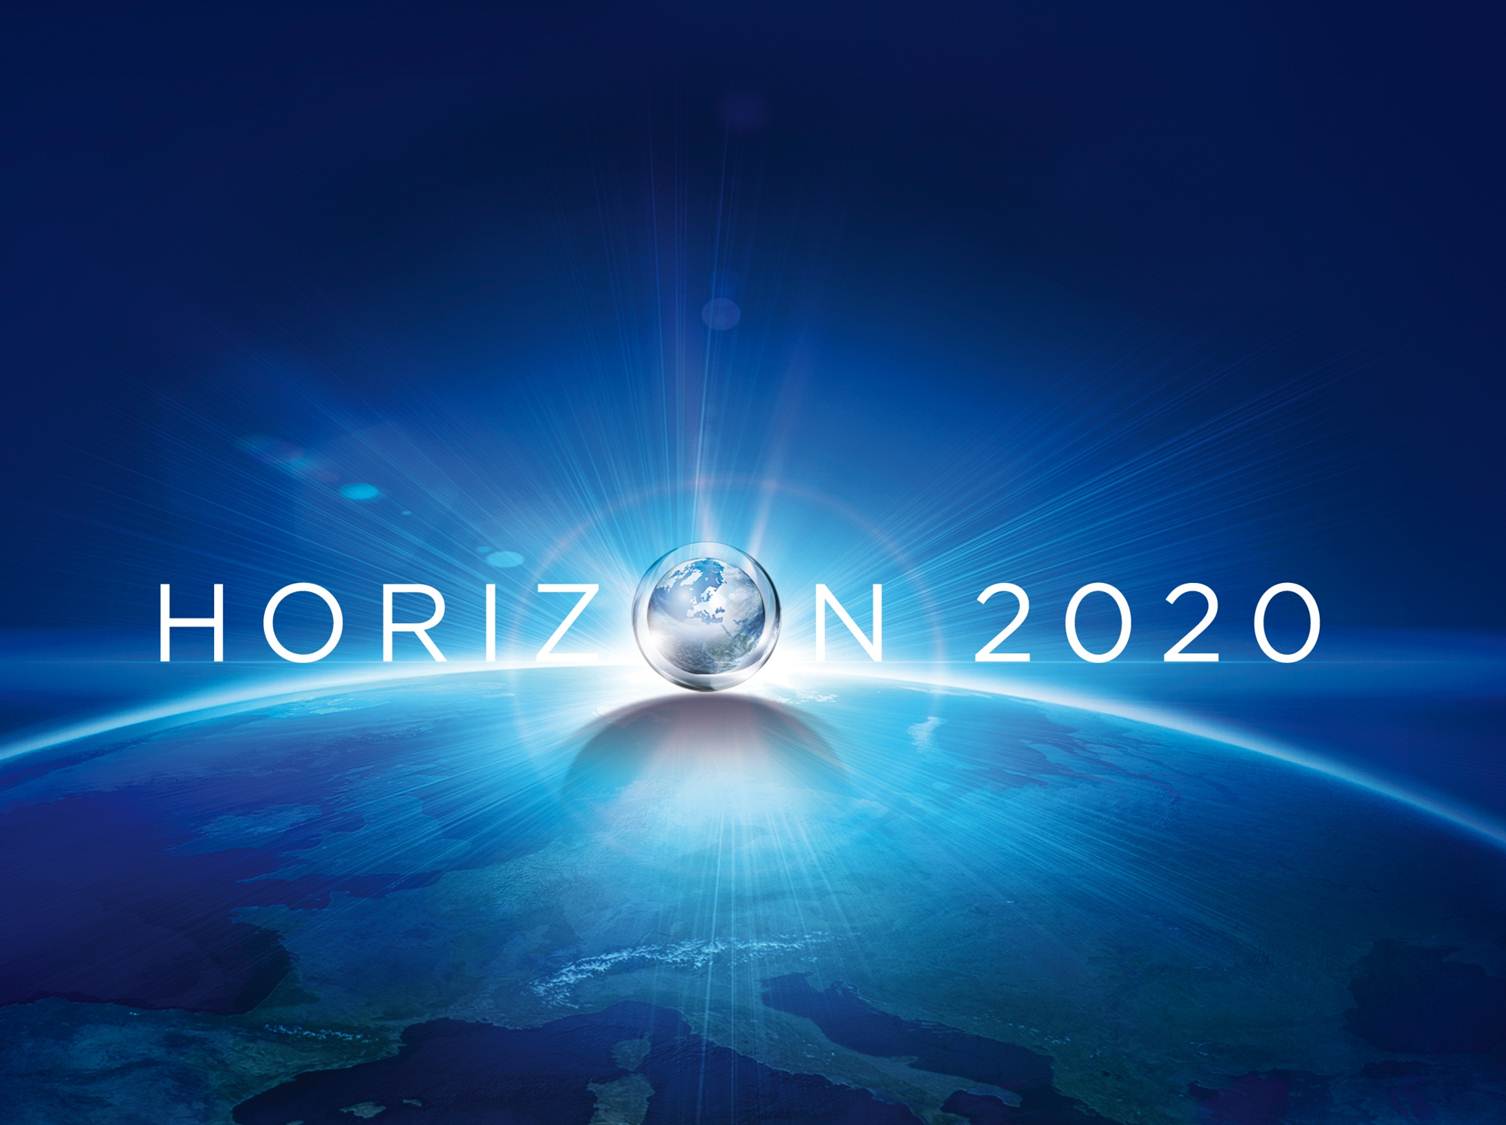 horizon-2020